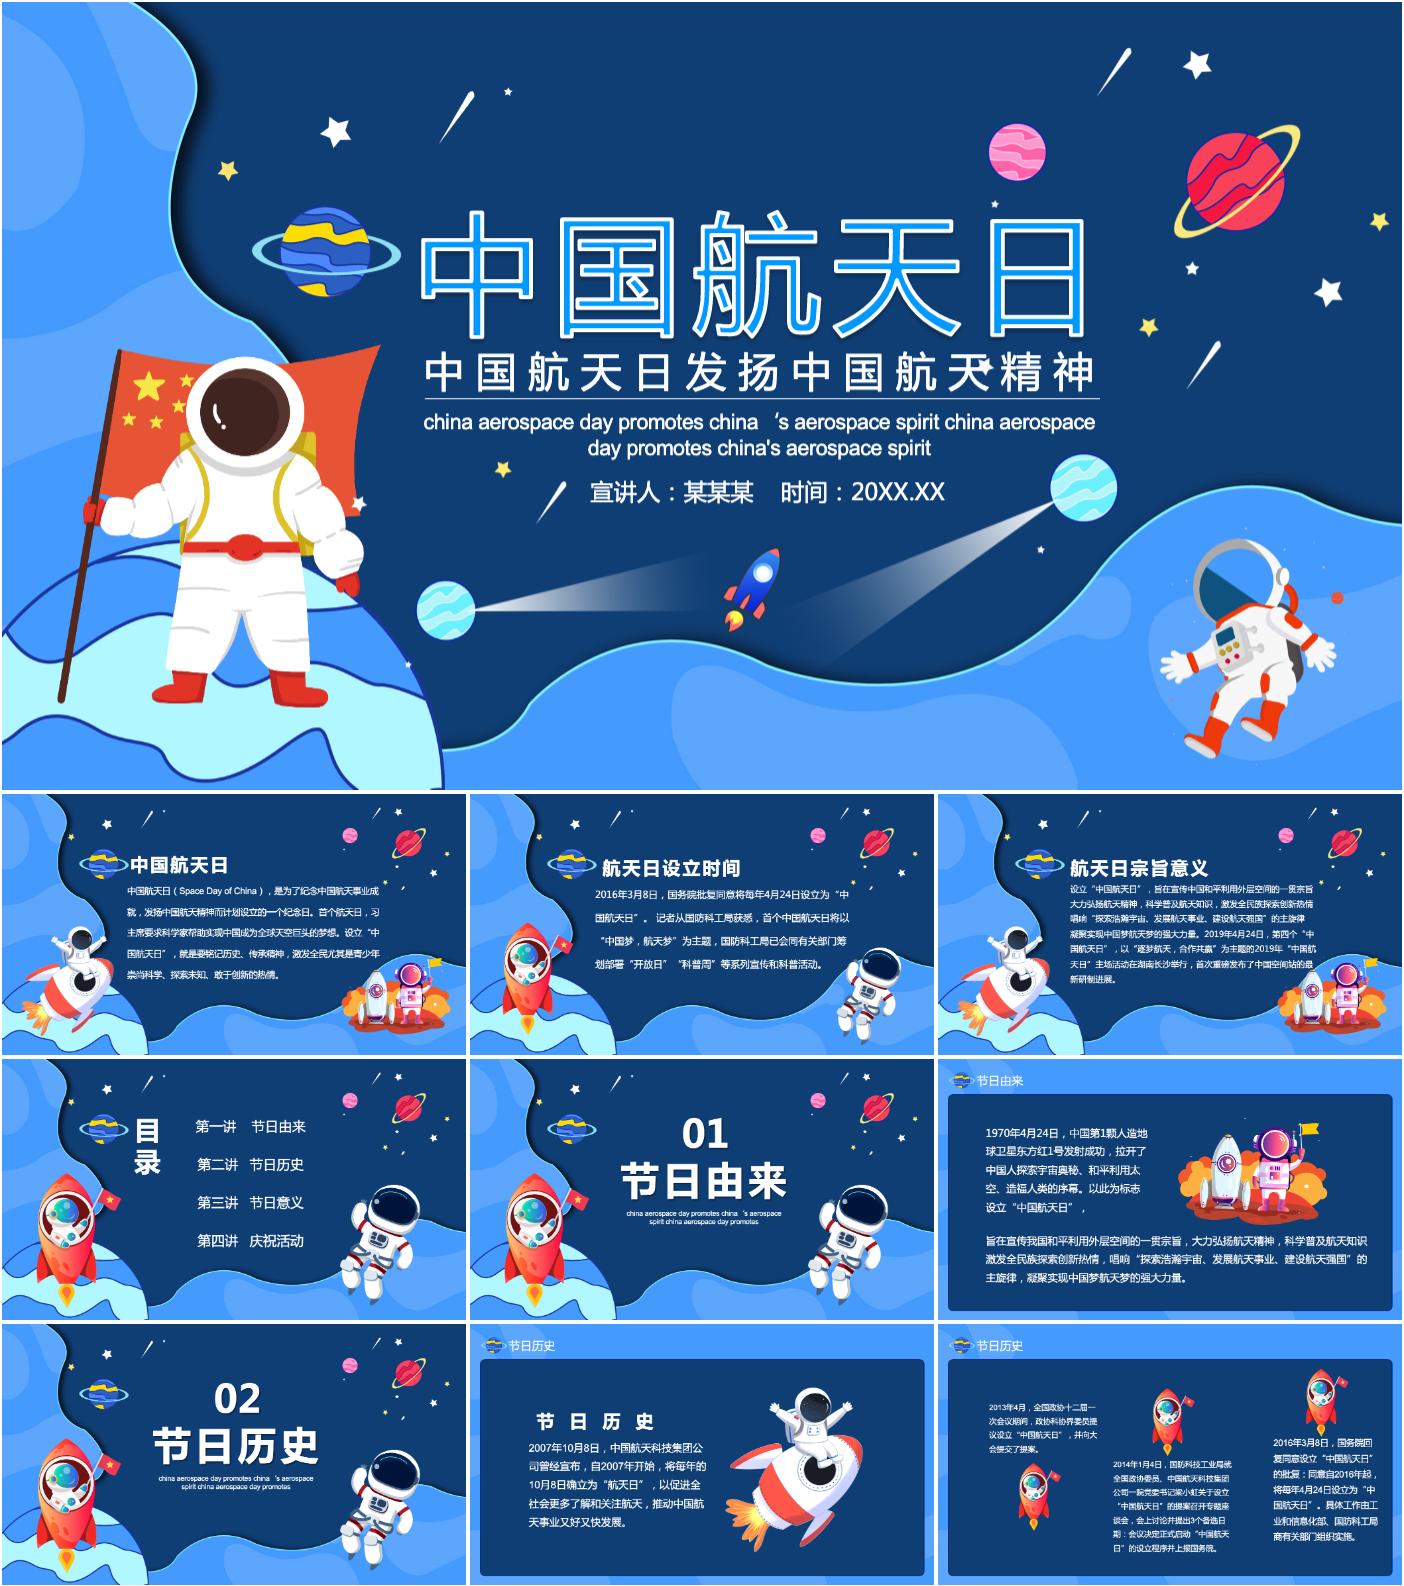 最新18套高质量中国航天日ppt模板!